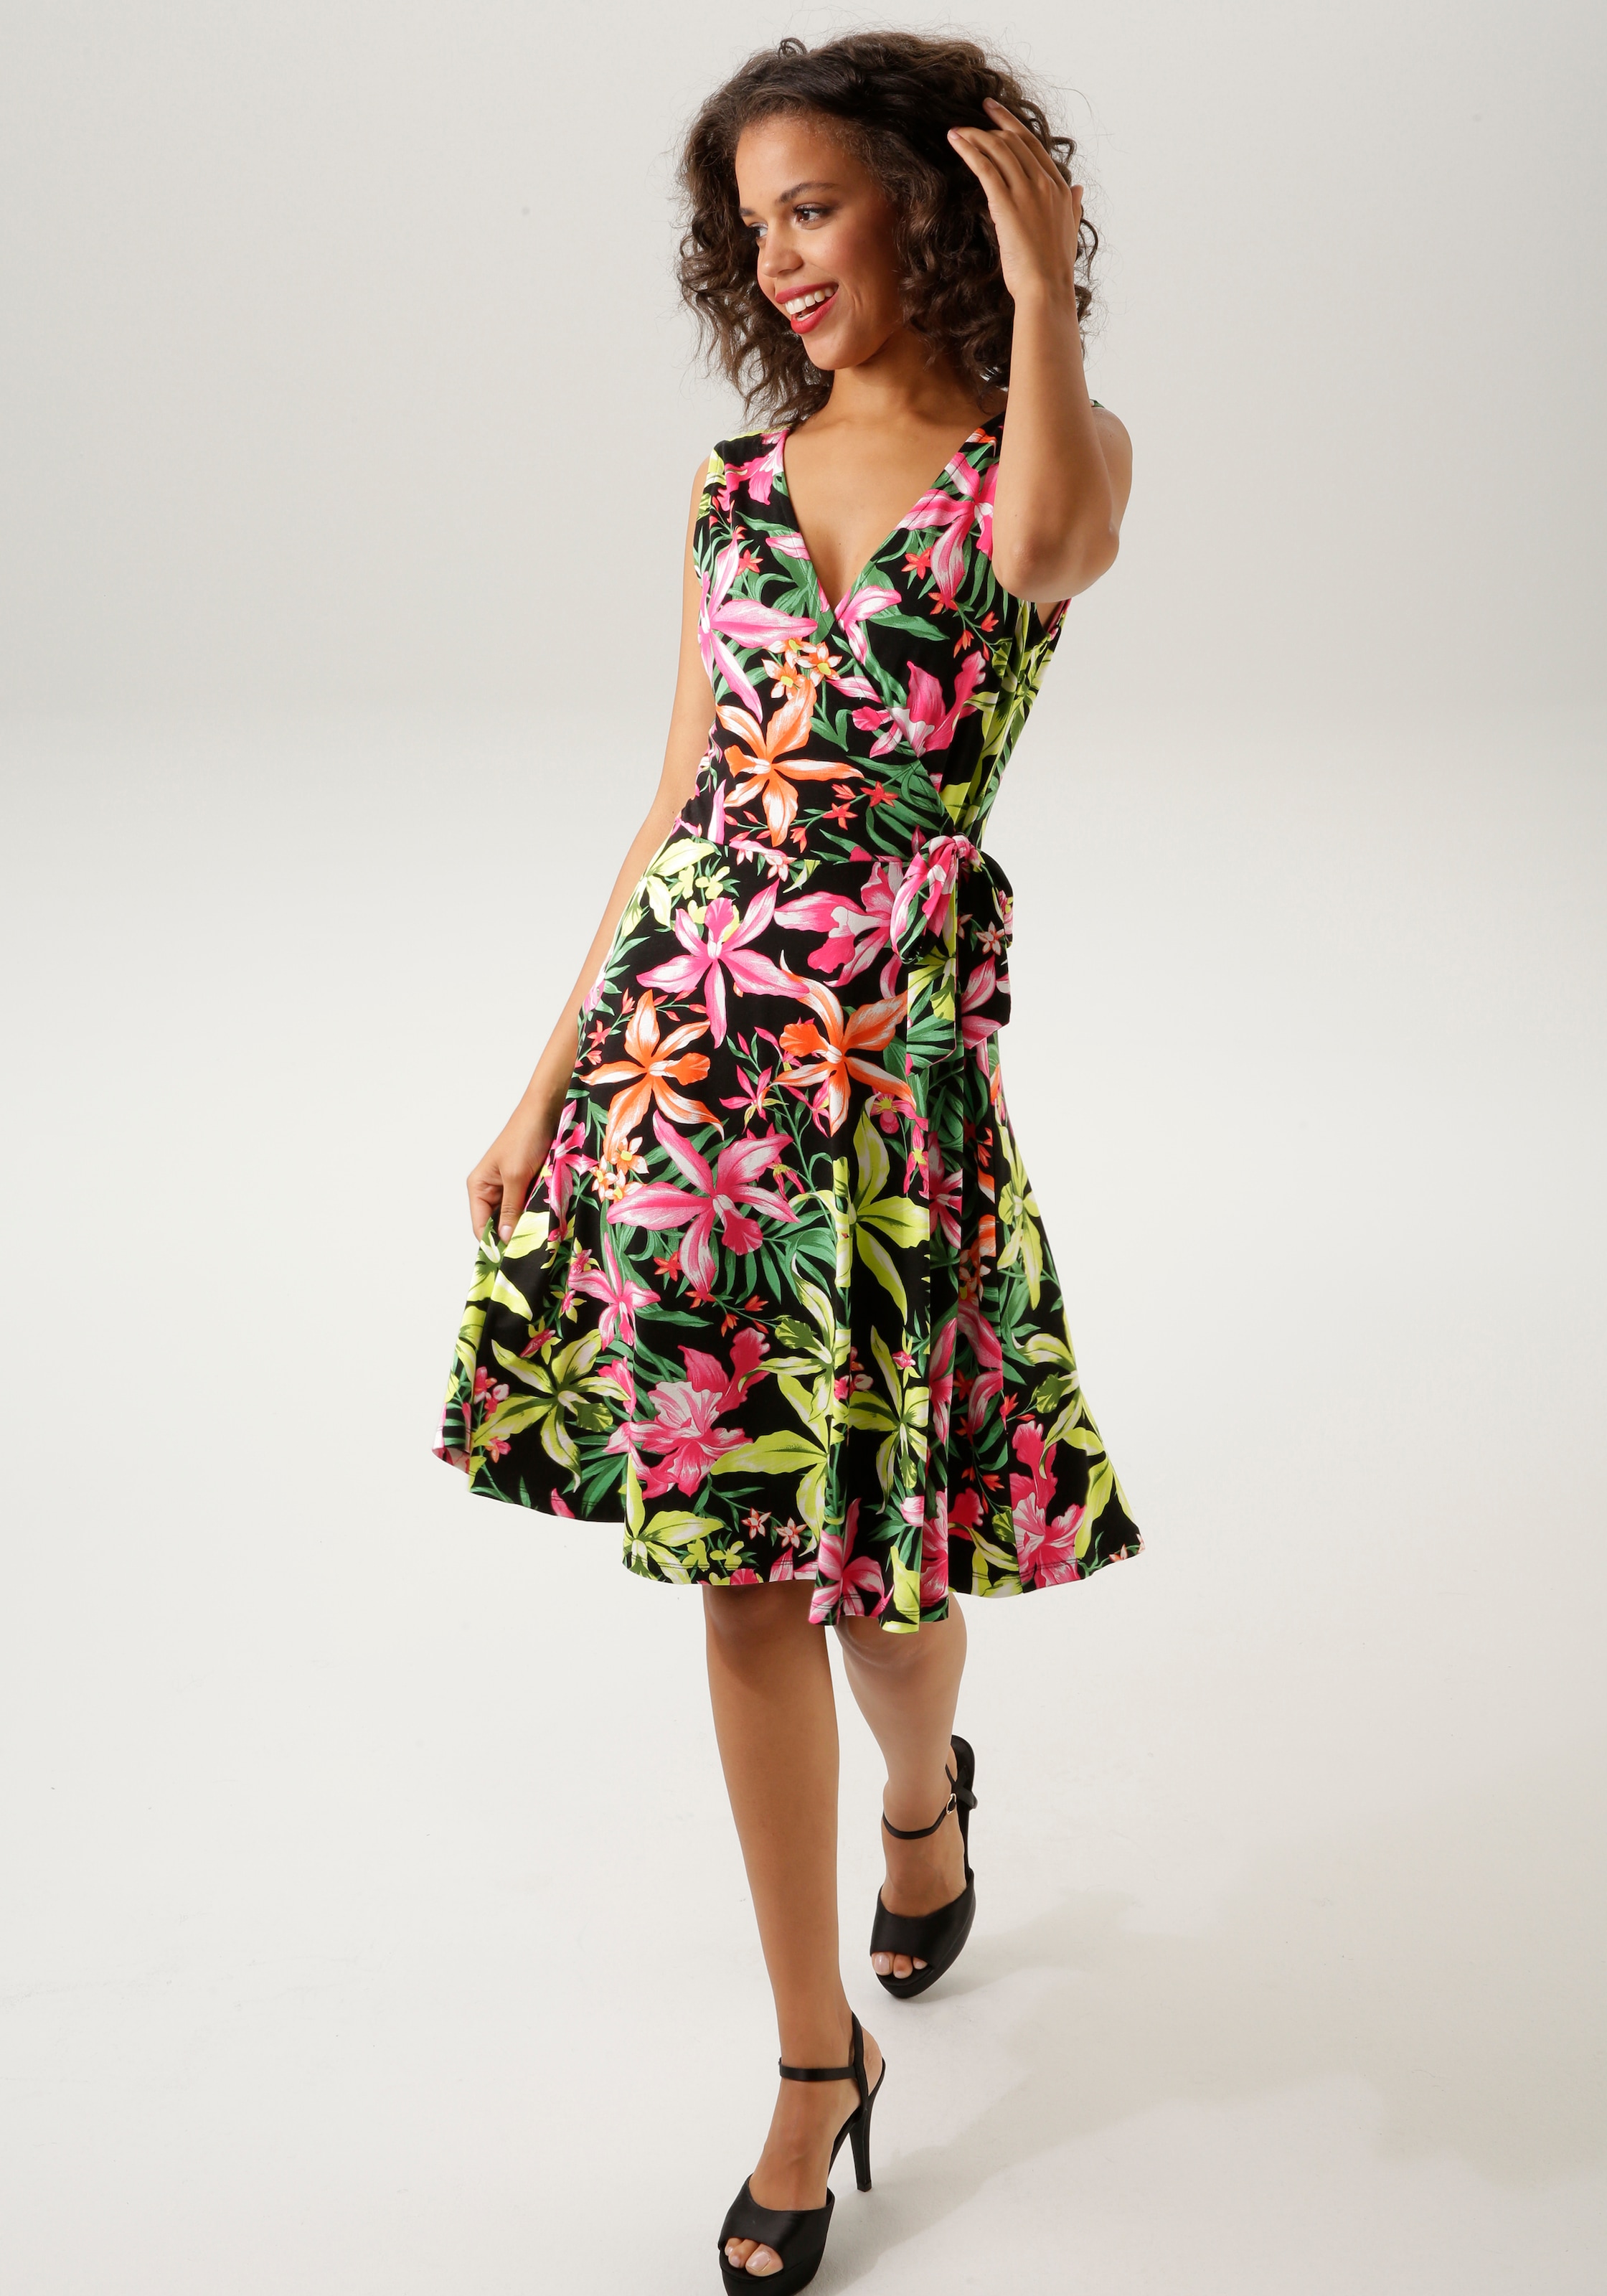 Aniston CASUAL Sommerkleid, mit farbenfrohem, grossflächigem Blumendruck - jedes Teil ein Unikat